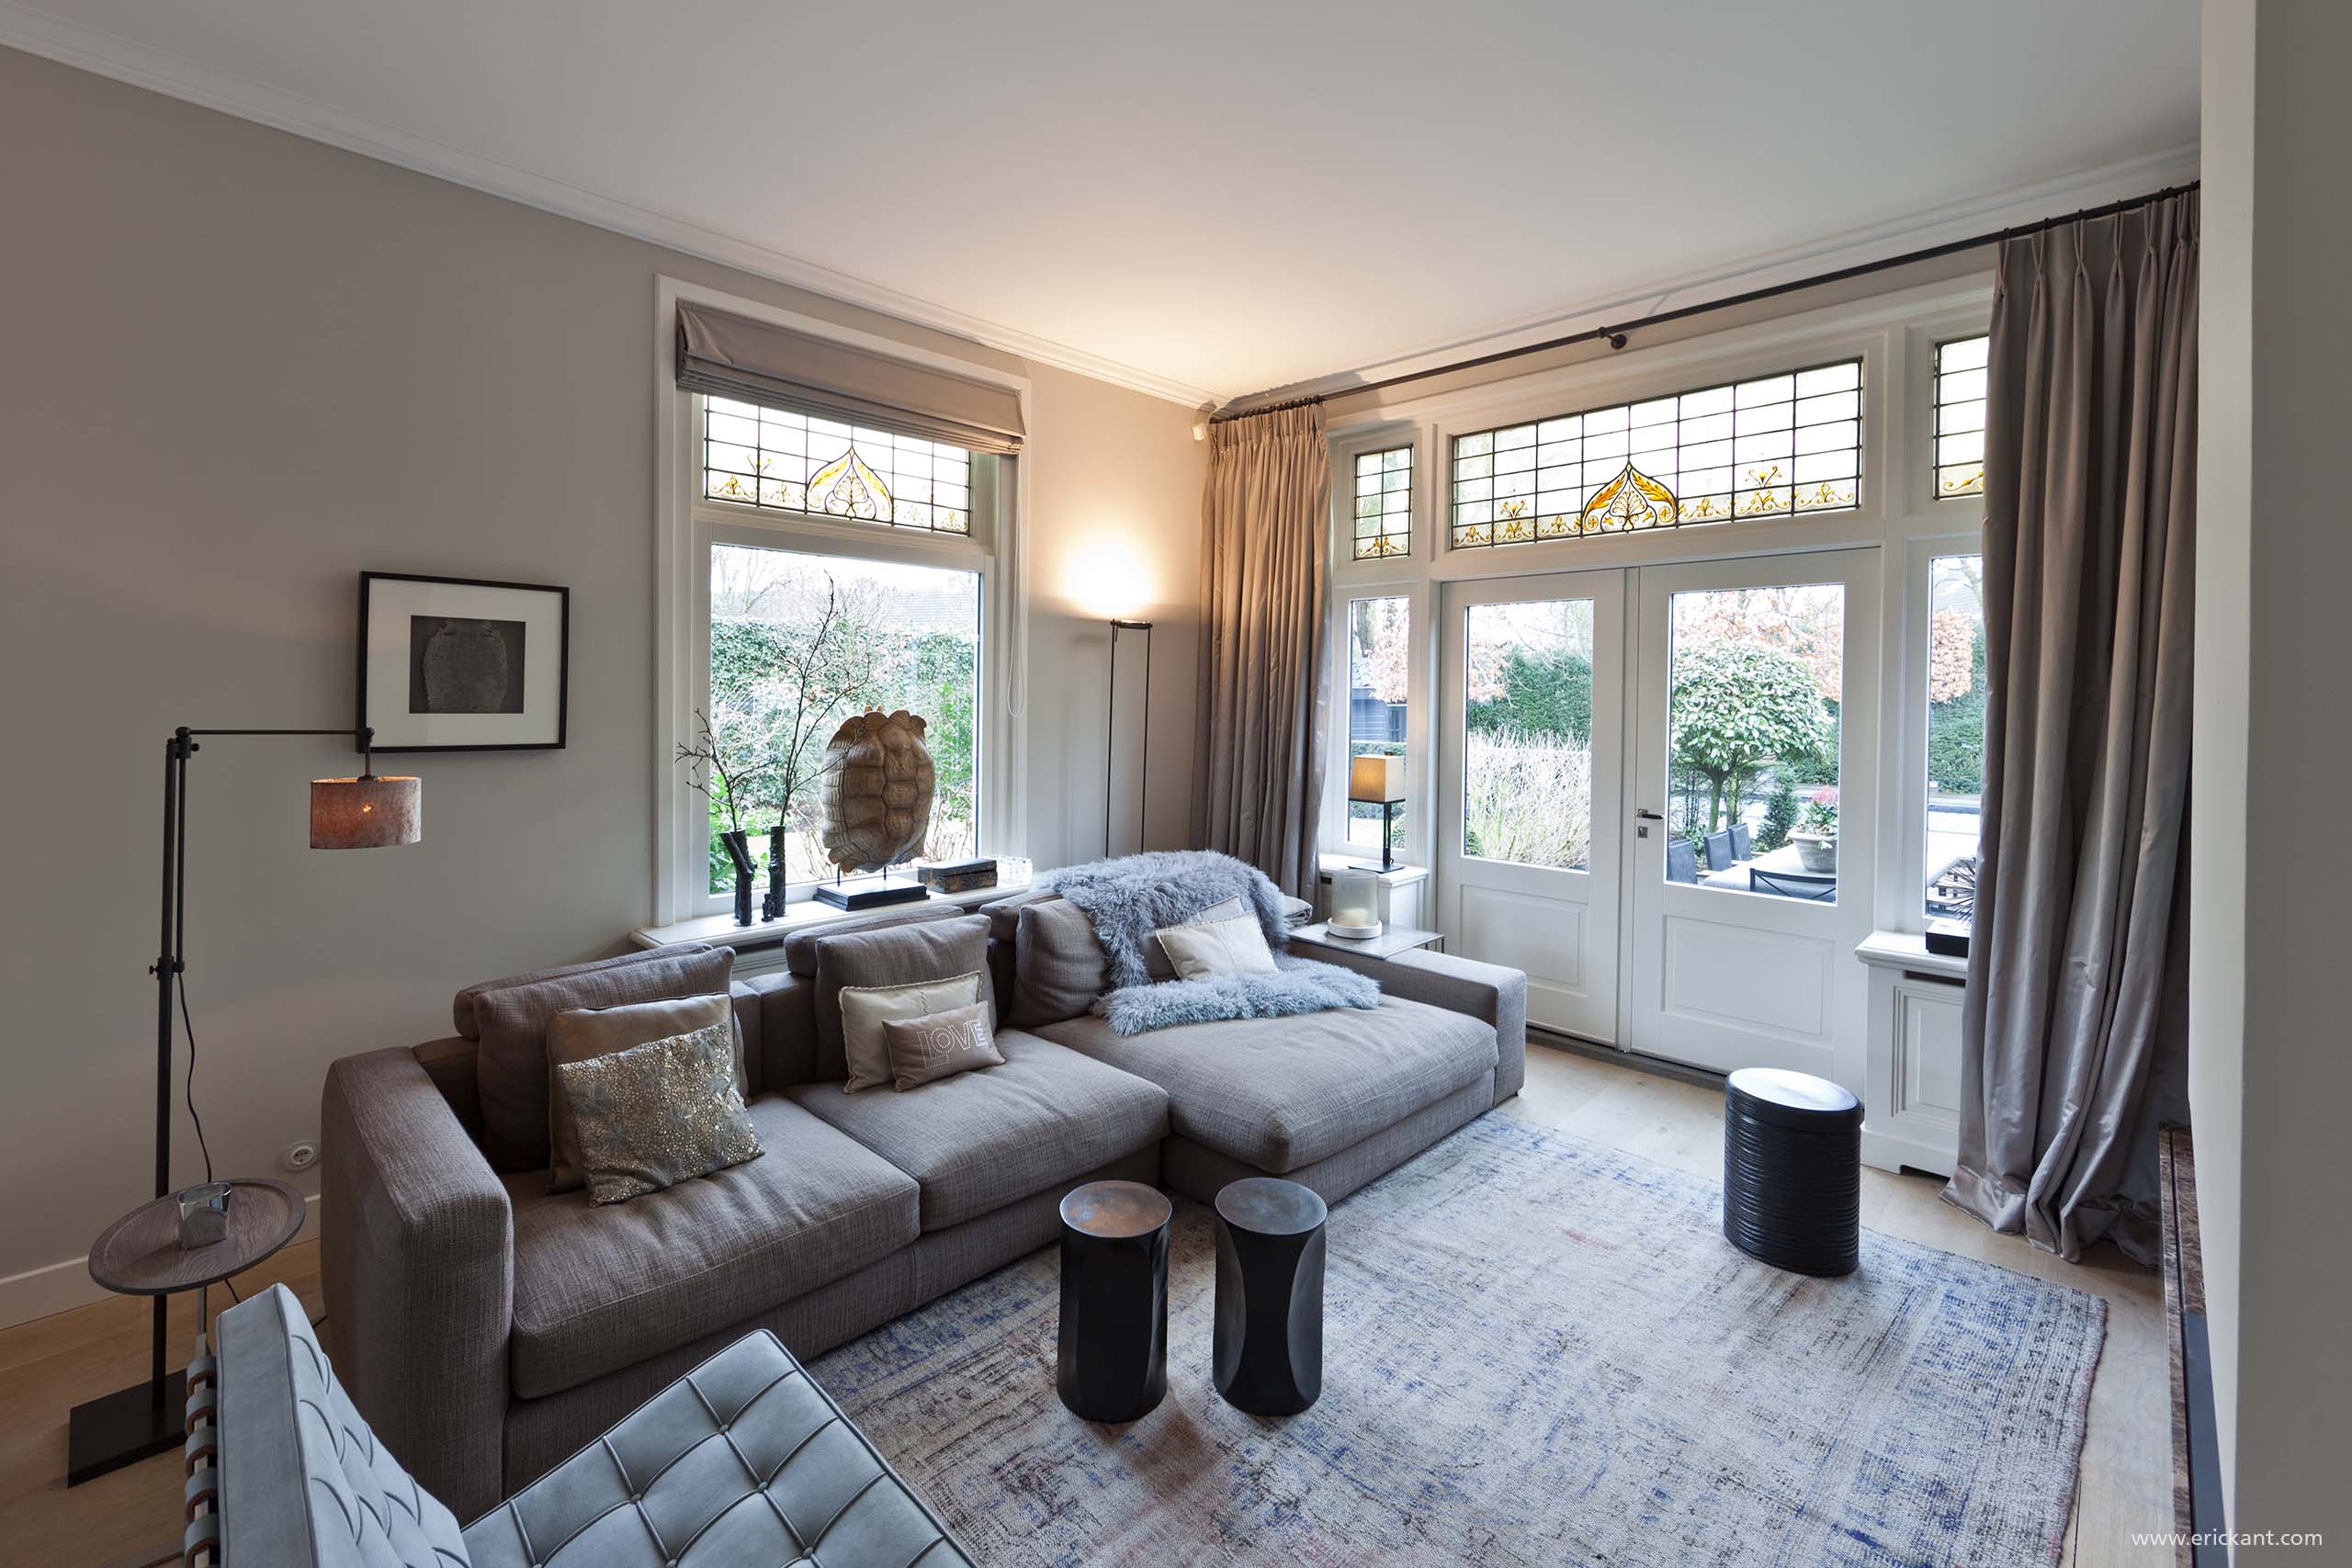 Classic Villa-livingroom-ERIC KANT.jpg